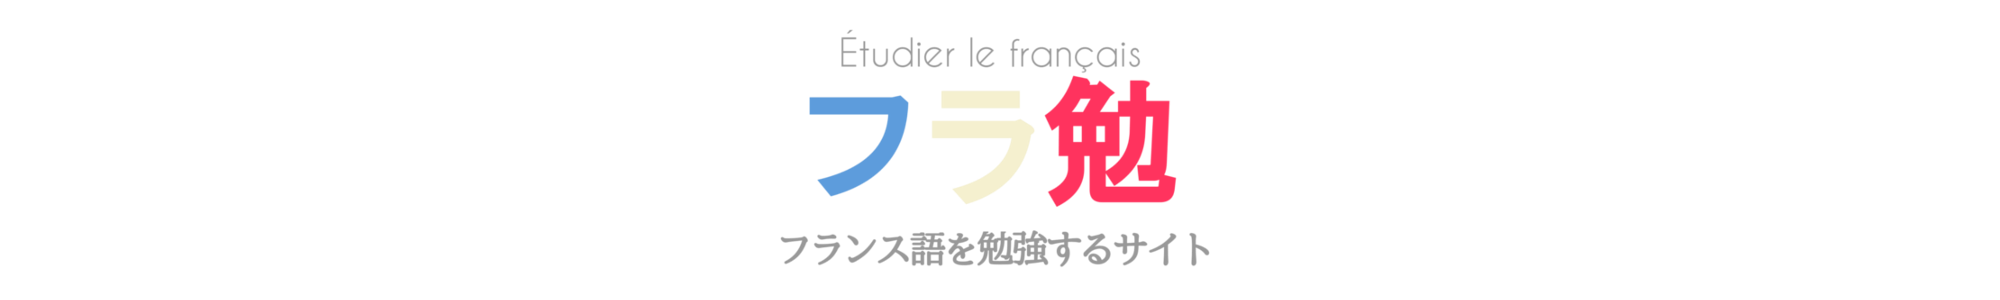 フランス語文法 過去分詞 Participe Passe の作り方と用法を例文とともに解説 フラ勉 フランス語を勉強するサイト